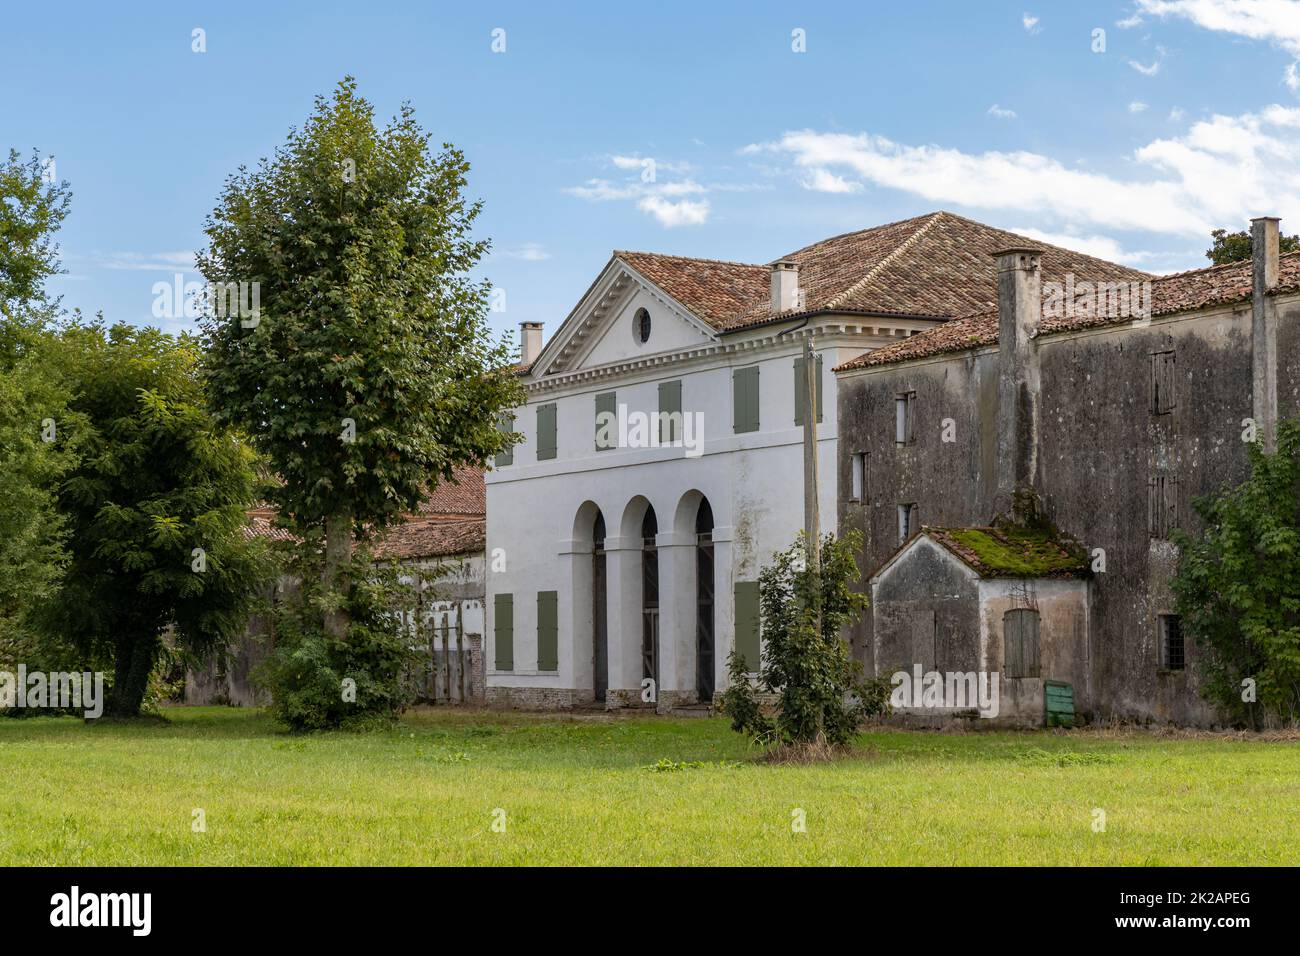 Villa Zeno cerca de Cesalto, sitio de la UNESCO, región del Véneto, norte de Italia. La villa más oriental diseñada por el arquitecto renacentista italiano Andrea Palladio. Foto de stock